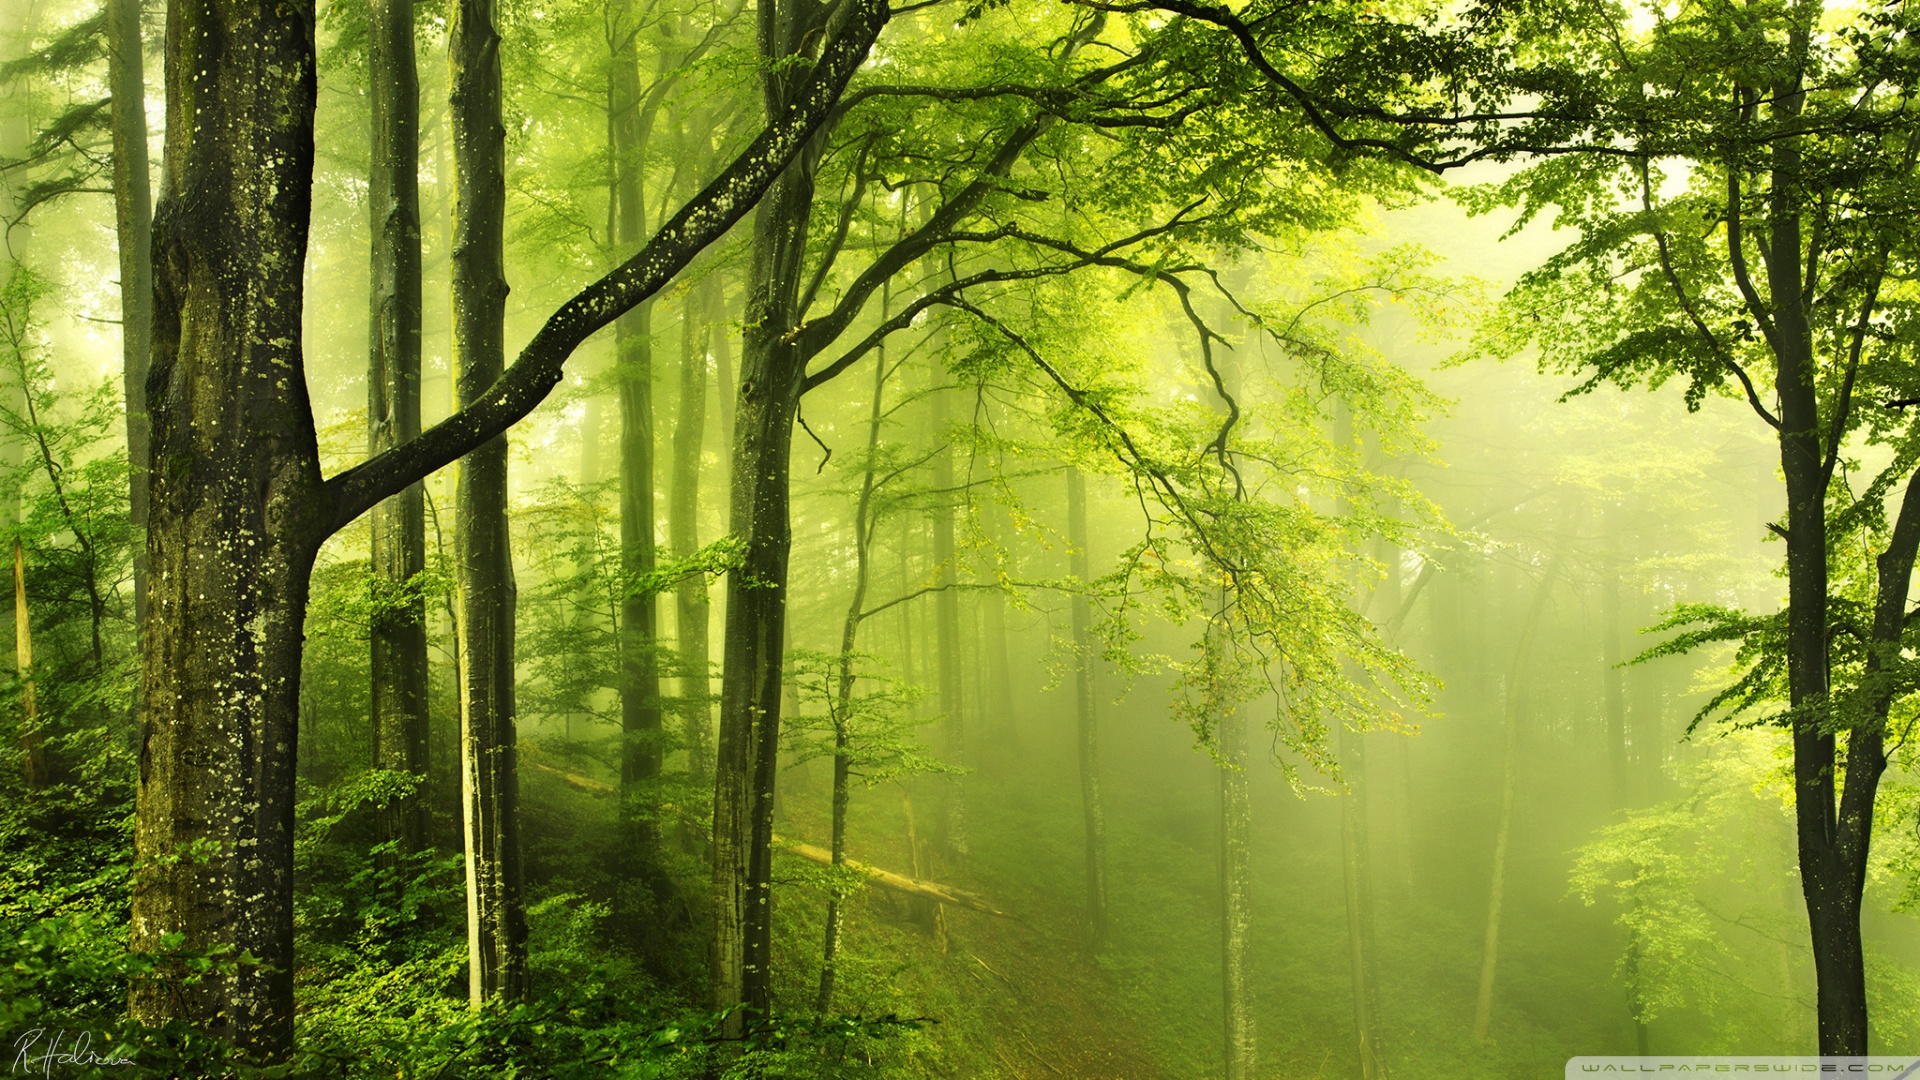 Sự tươi mát và bình yên sẽ đến với bạn khi nhìn thấy nền rừng xanh HD này. Với màu xanh rực rỡ và rất nhiều chi tiết, bức hình này sẽ giúp bạn những giây phút tĩnh lặng và thư giãn tuyệt vời.